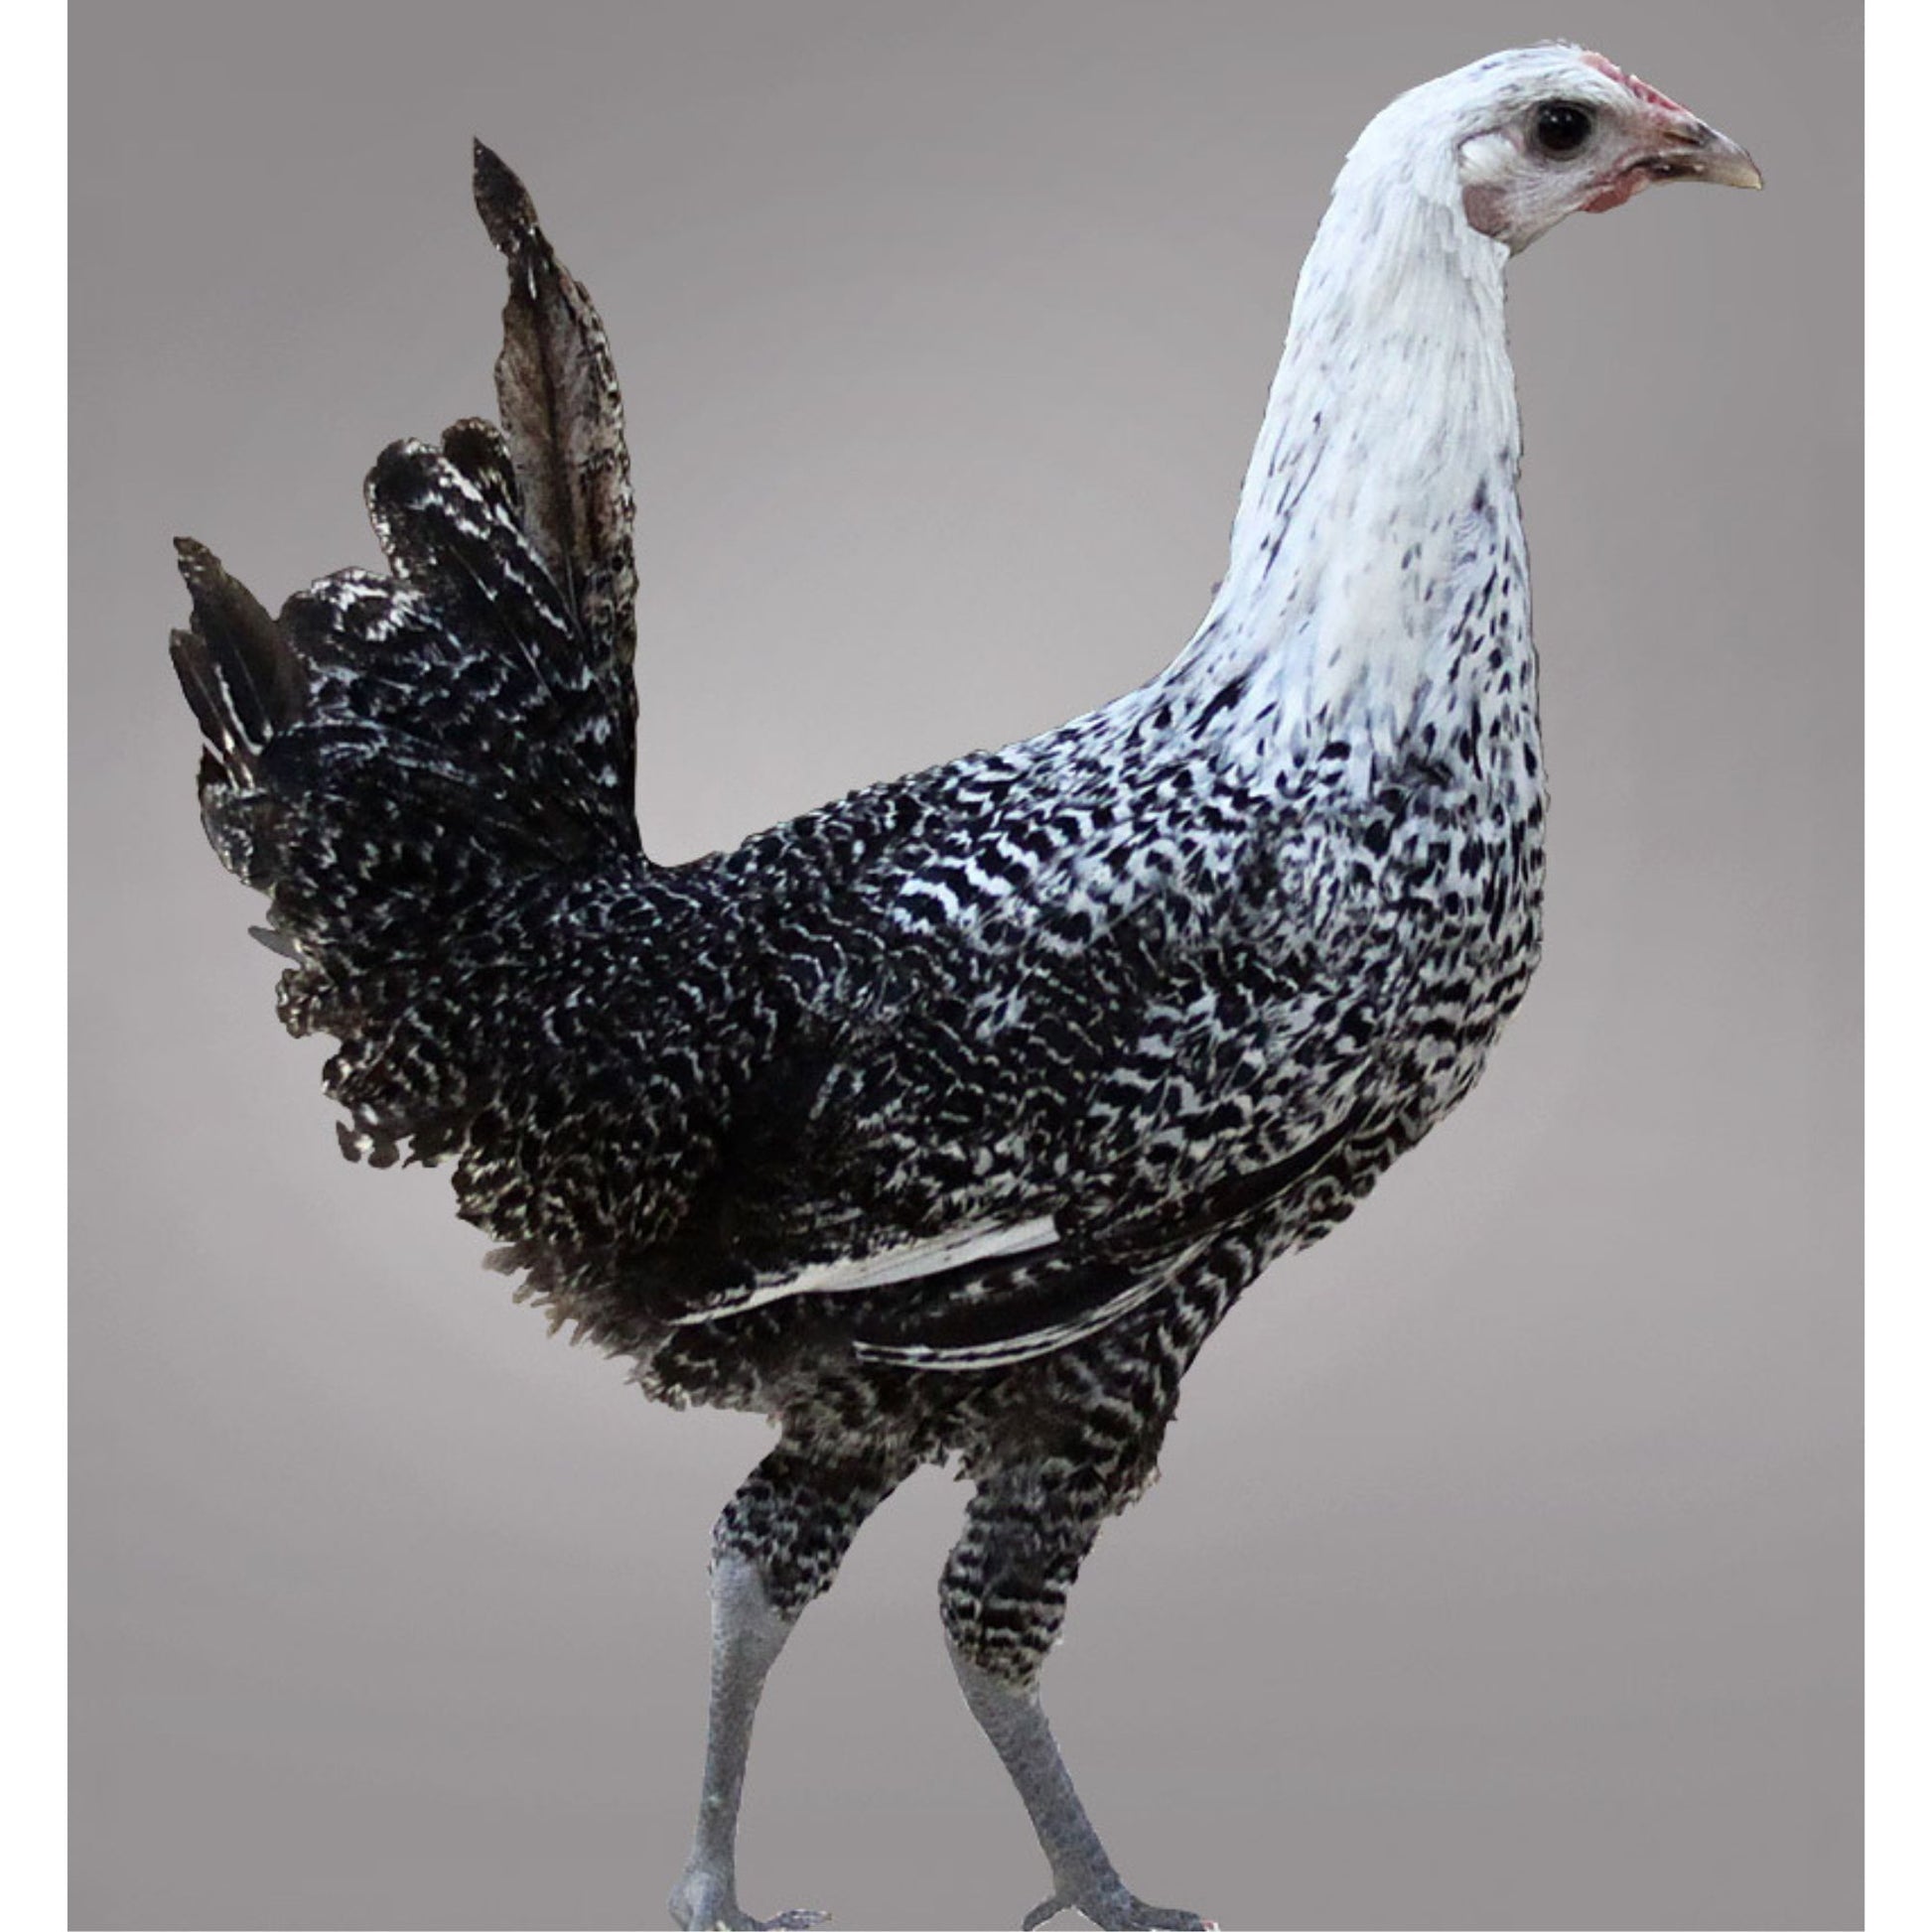 Egyptian Fayoumi chicken